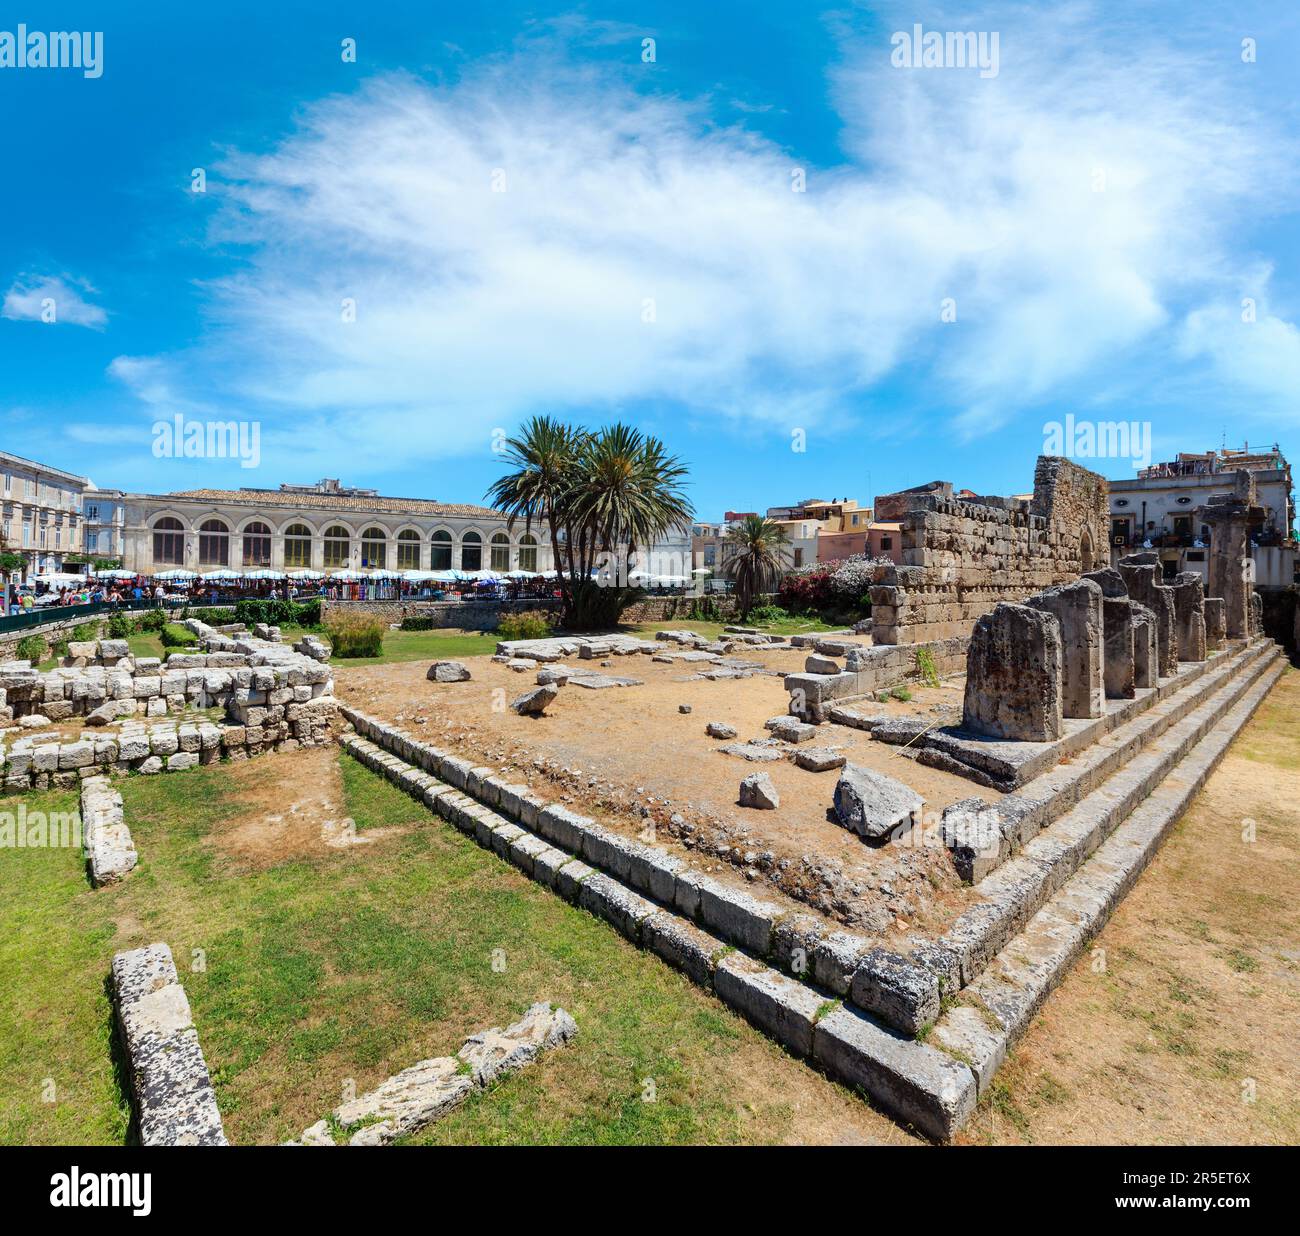 Die Ruinen der Tempel des Apollo (antike griechische Denkmäler auf der Insel Ortygia bei der Stadt Syrakus, Sizilien, Italien). Schöne Reise Foto von Sizilien. Menschen unr Stockfoto